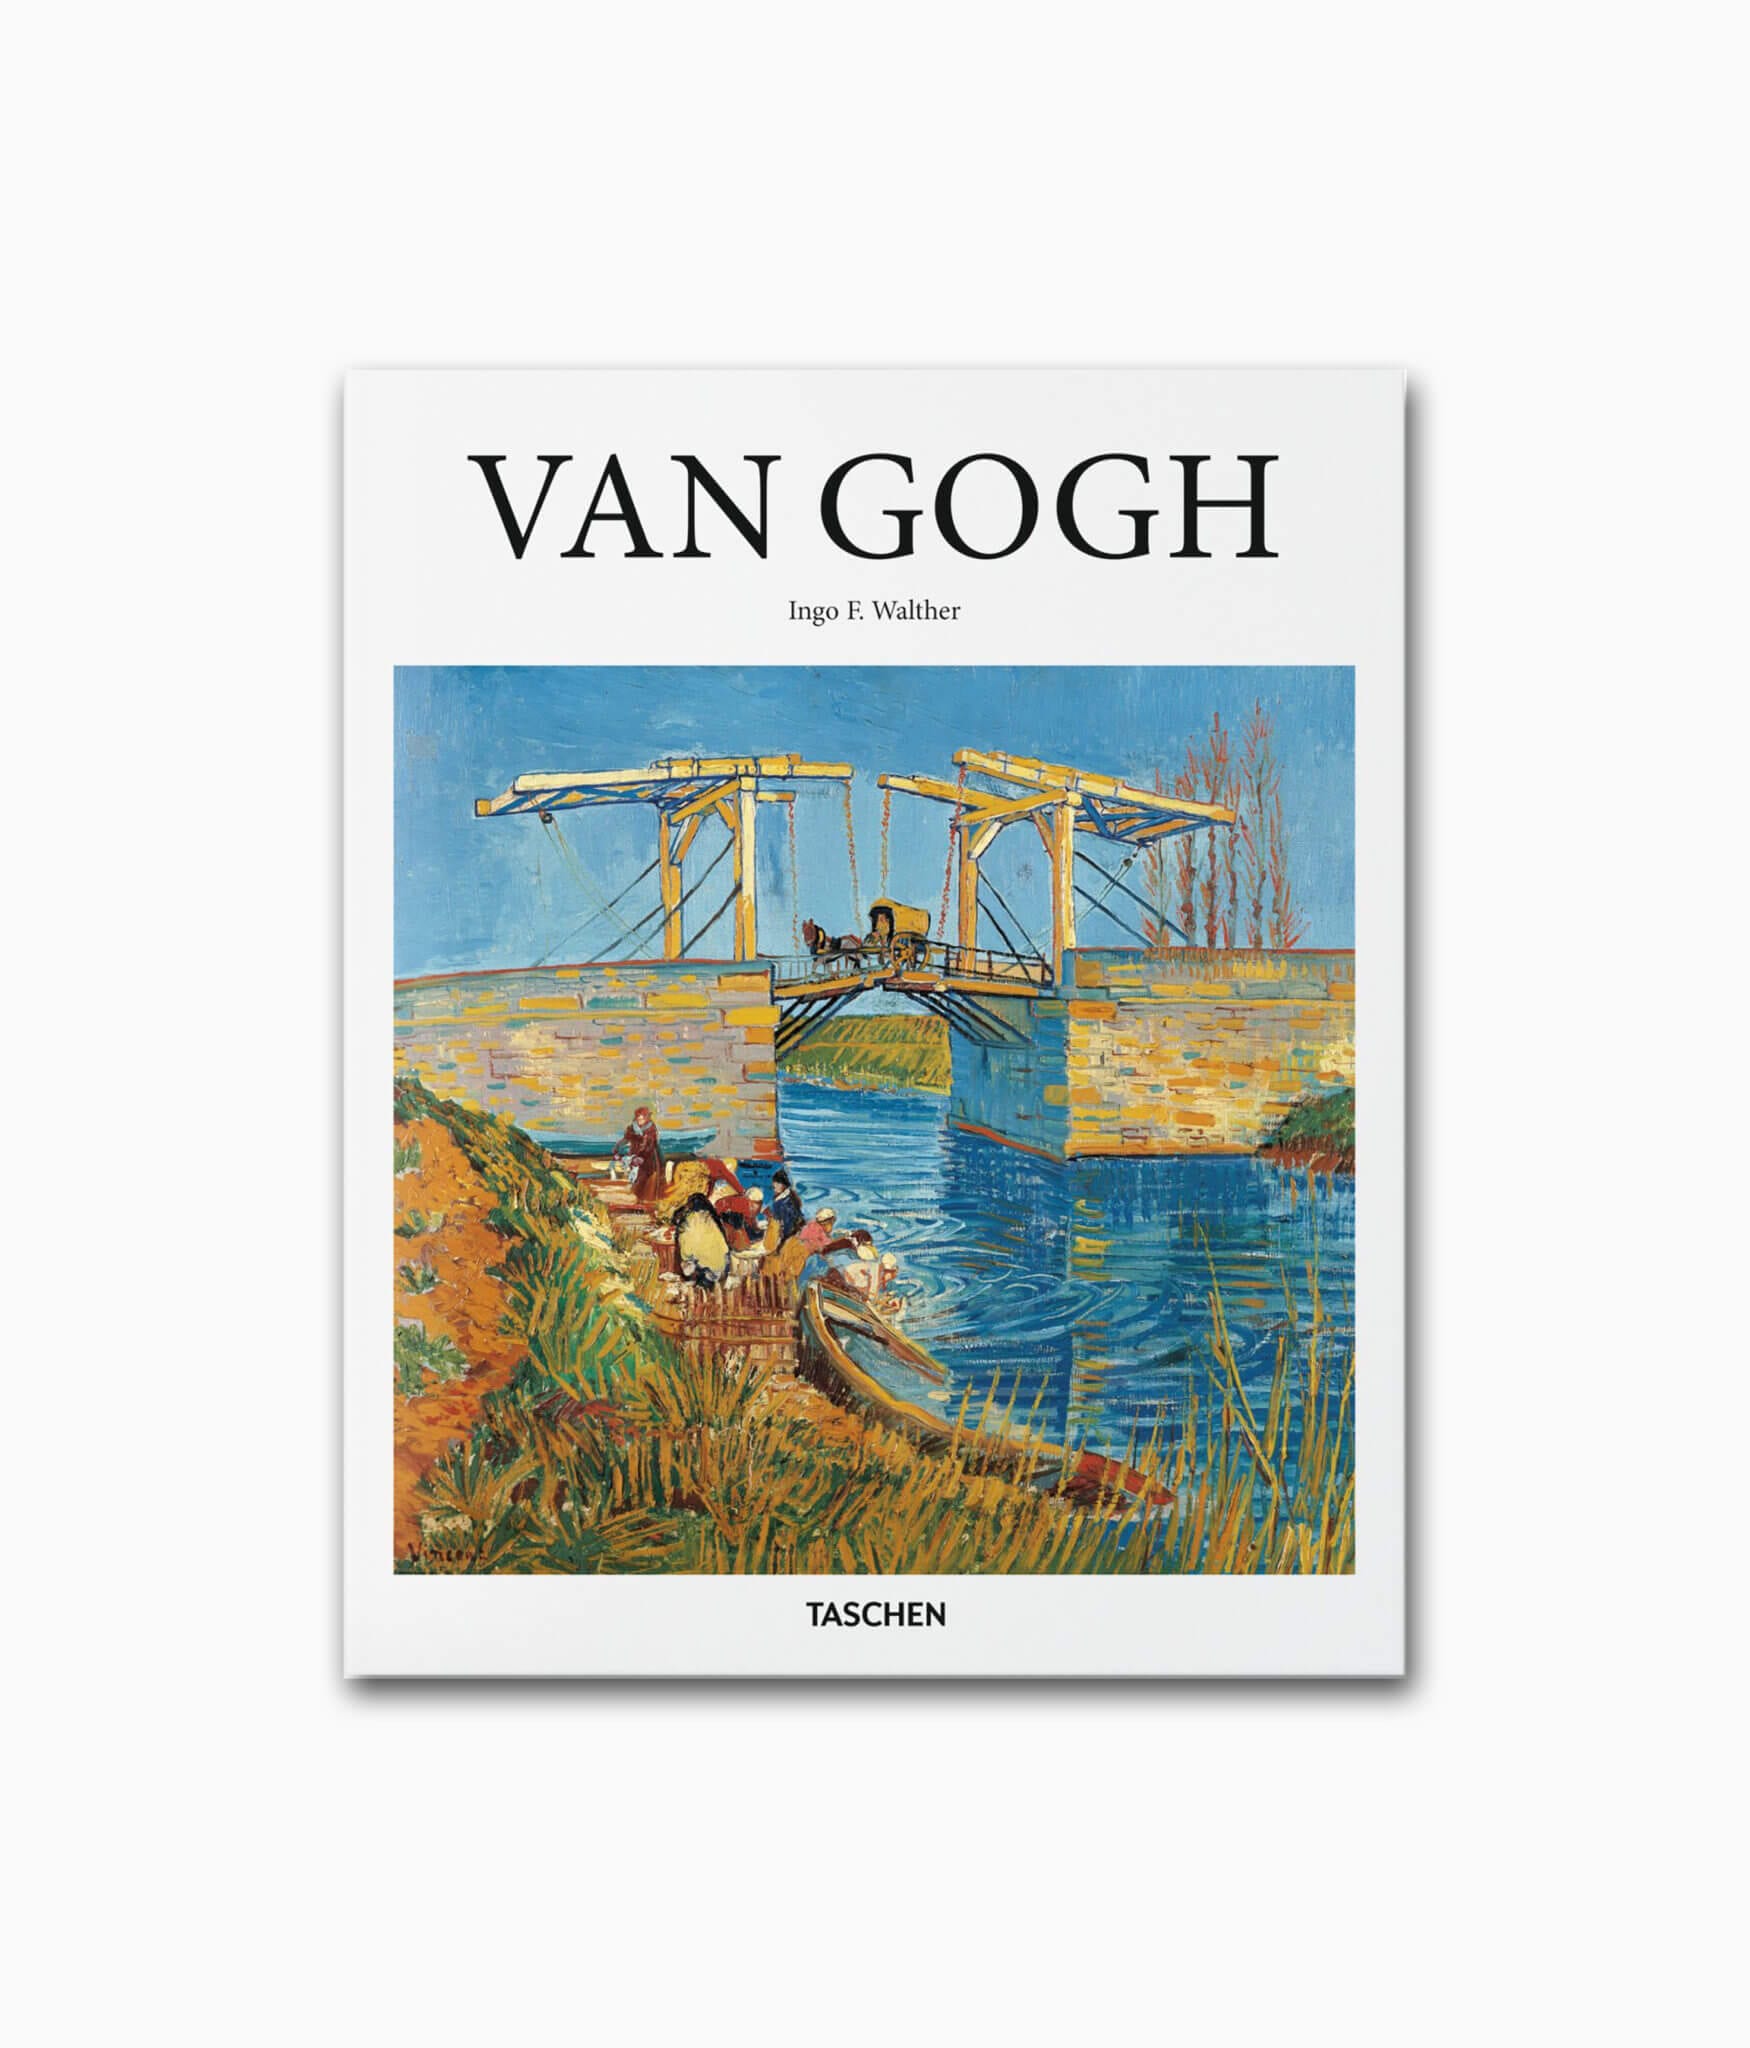 Cover des Kunstbuches über Vincent van Gogh mit dem Buchtitel van Gogh erschienen im TASCHEN Verlag